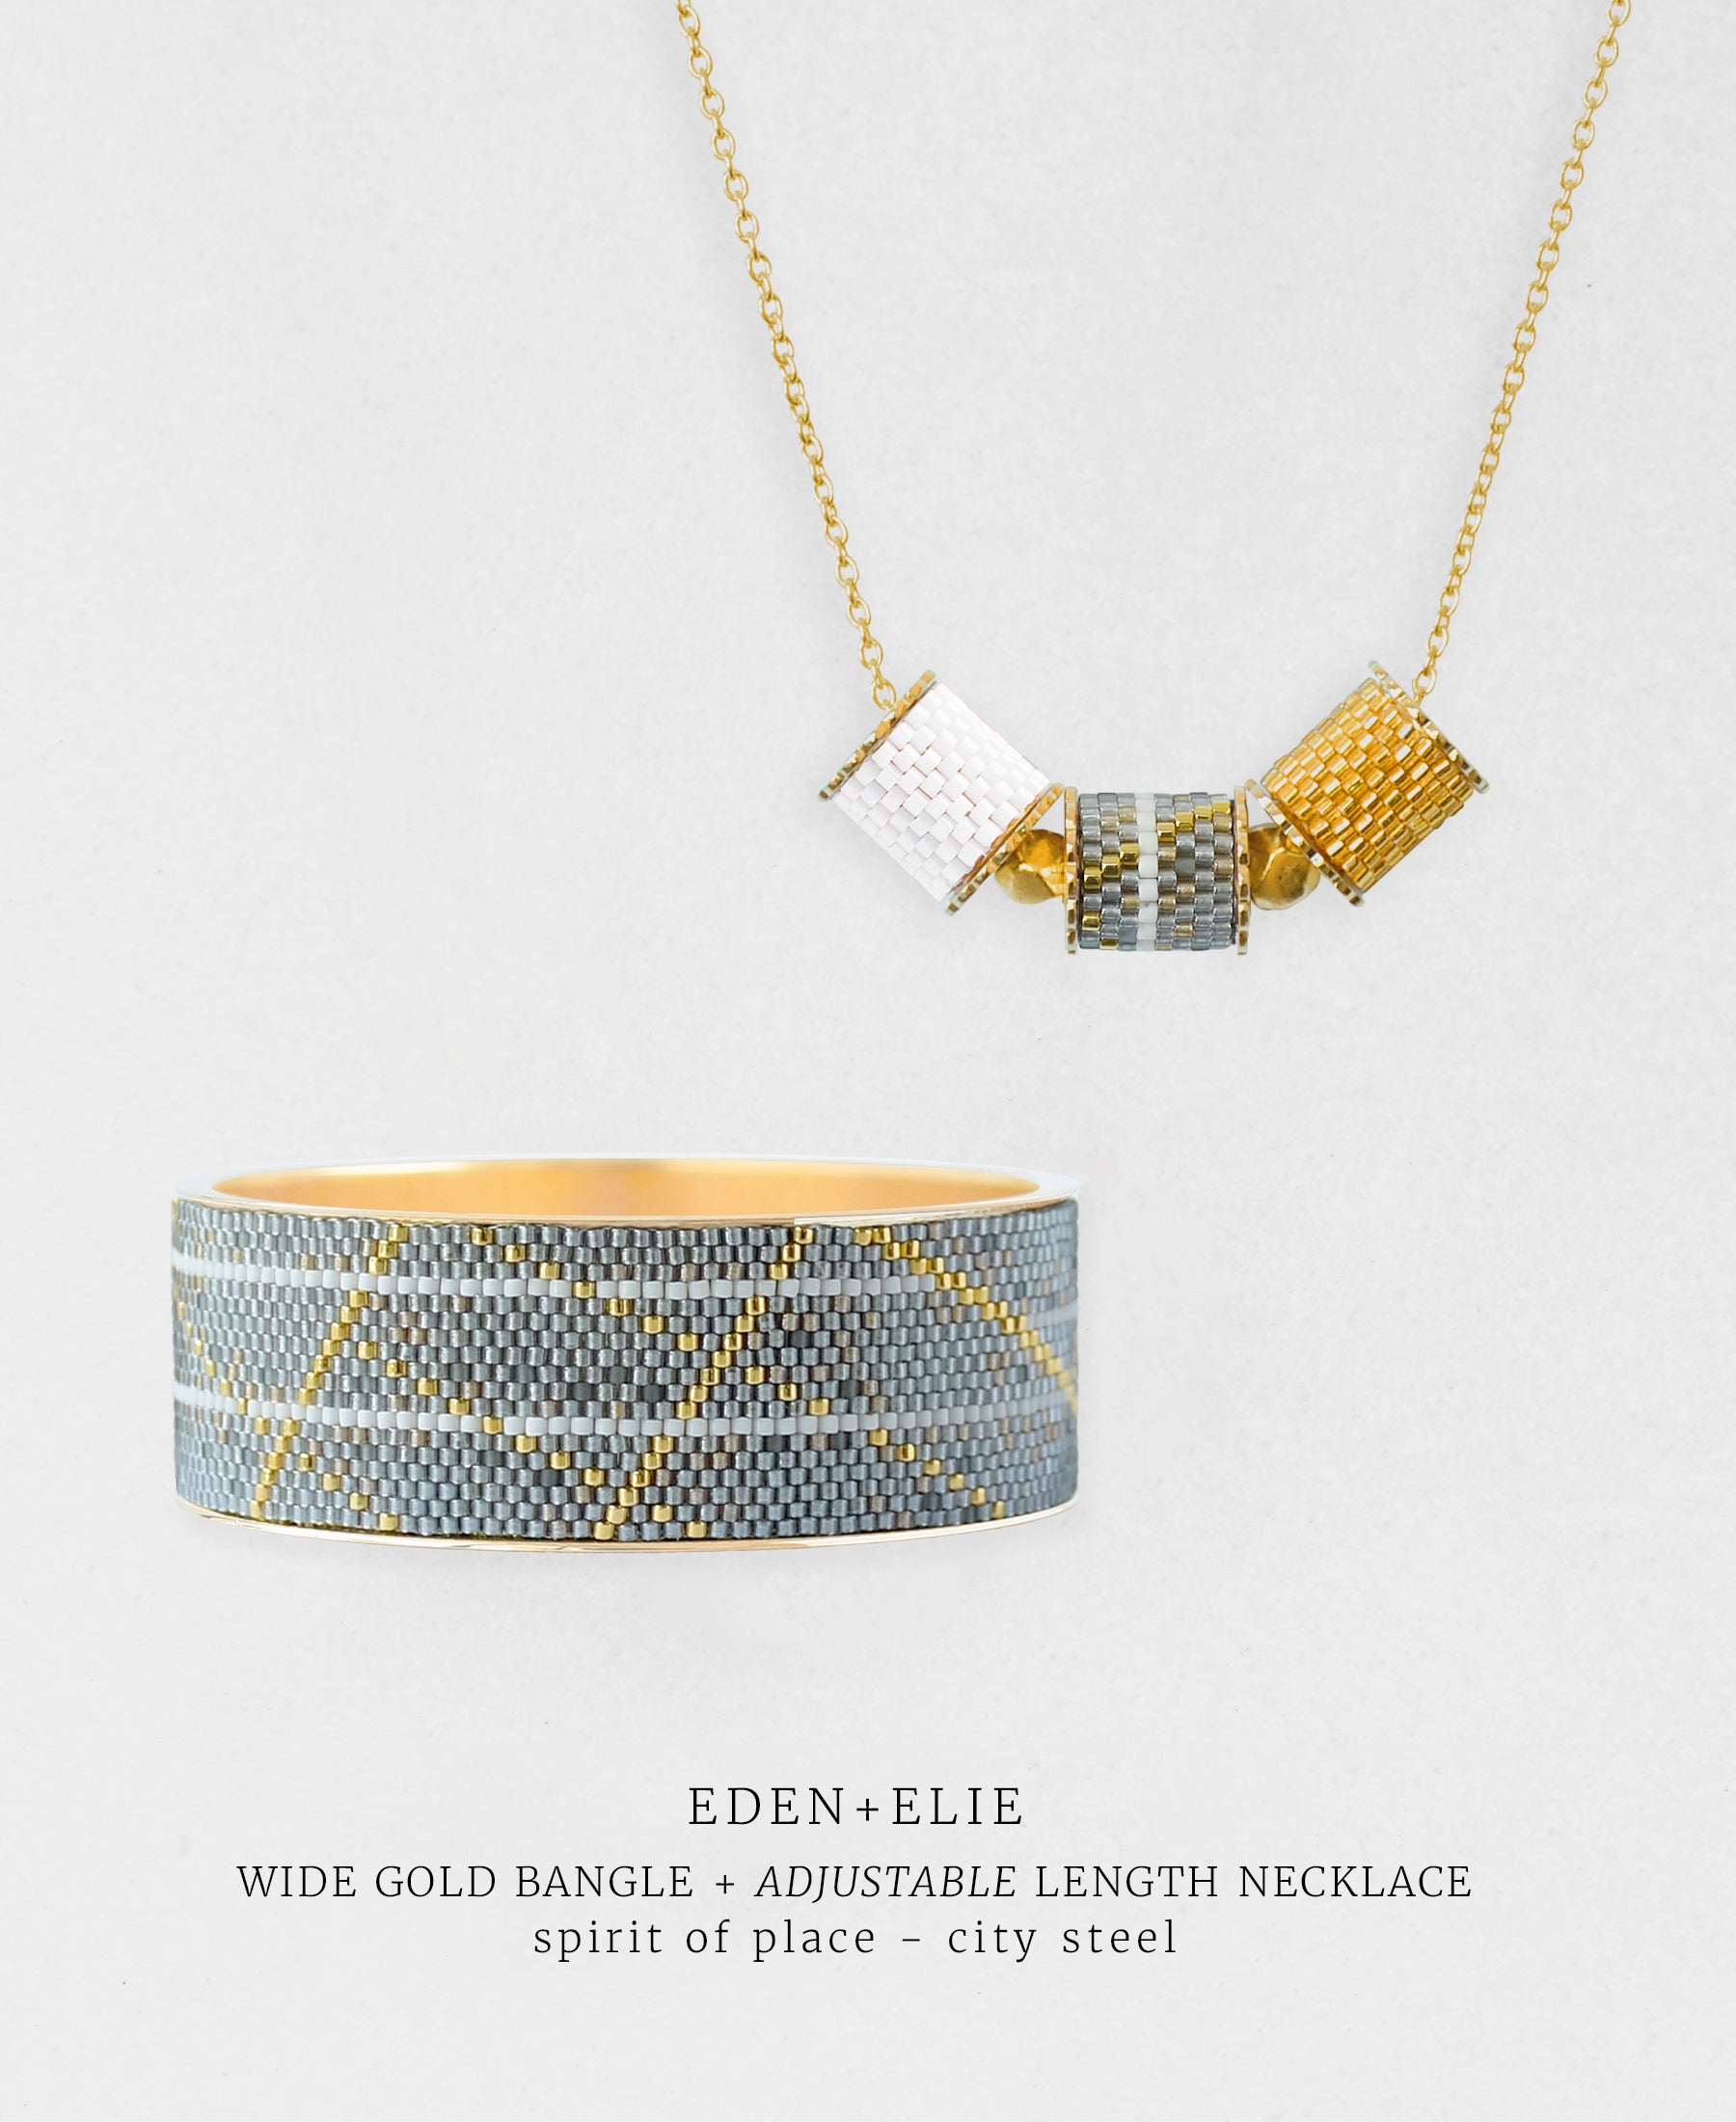 Wide Gold Bangle + Adjustable Length Necklace Set - Spirit of Place City Steel